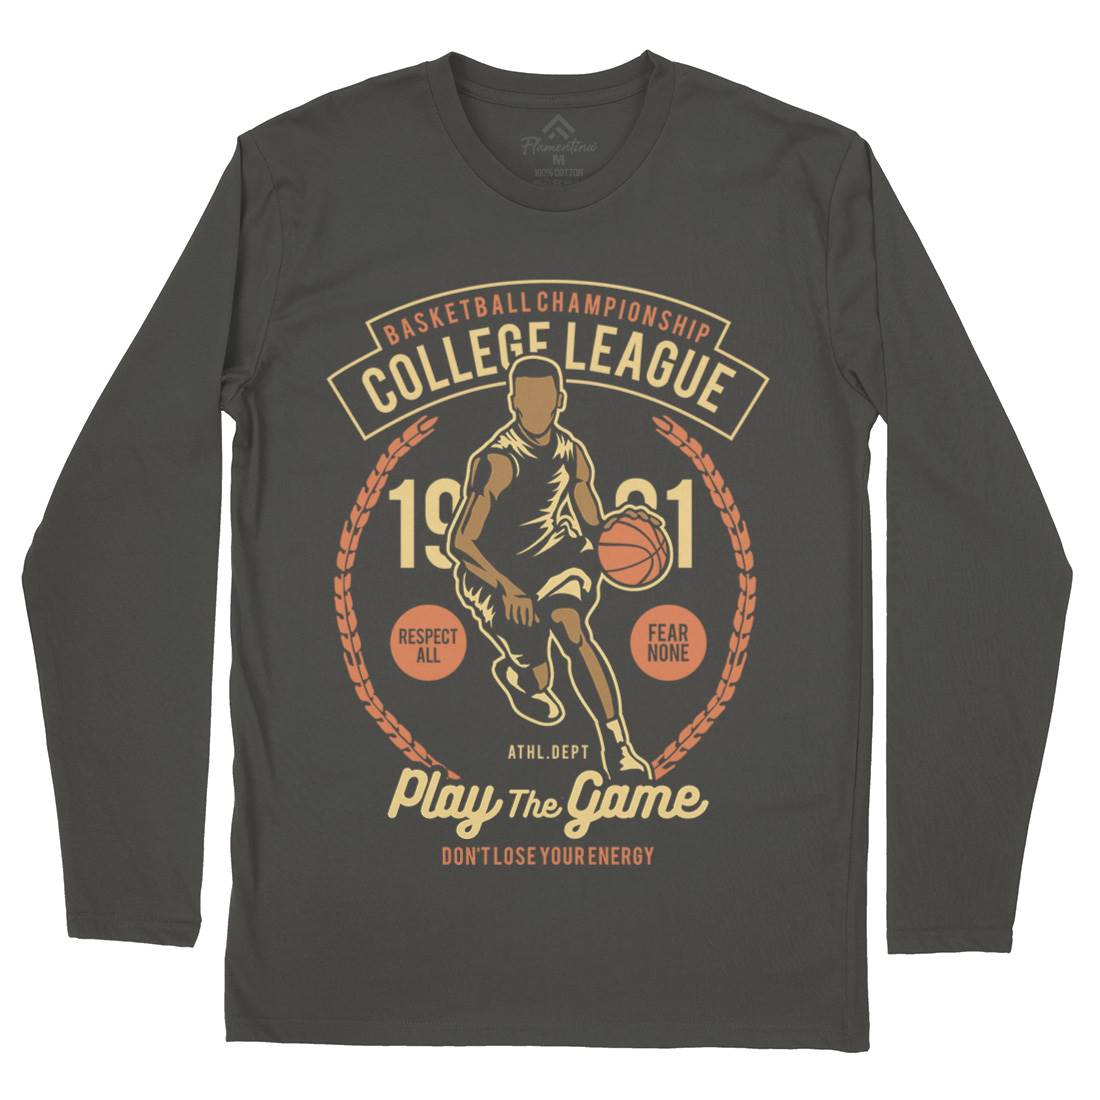 College League Mens Long Sleeve T-Shirt Sport B197